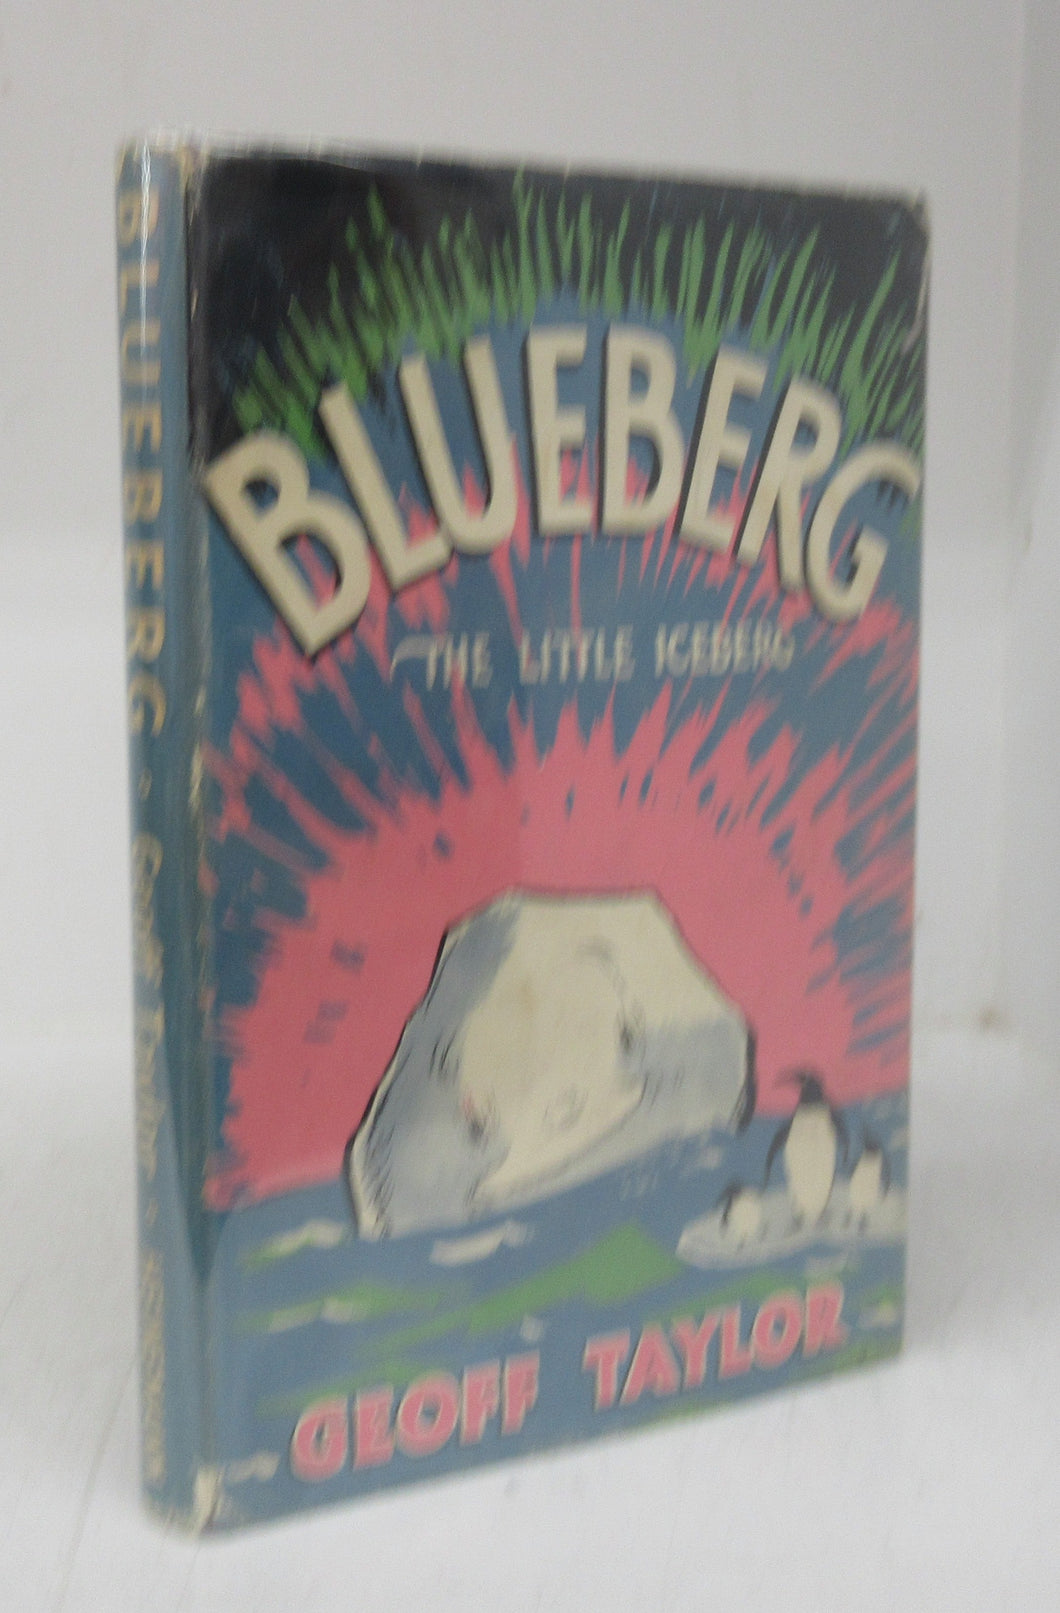 Blueberg: The Little Iceberg